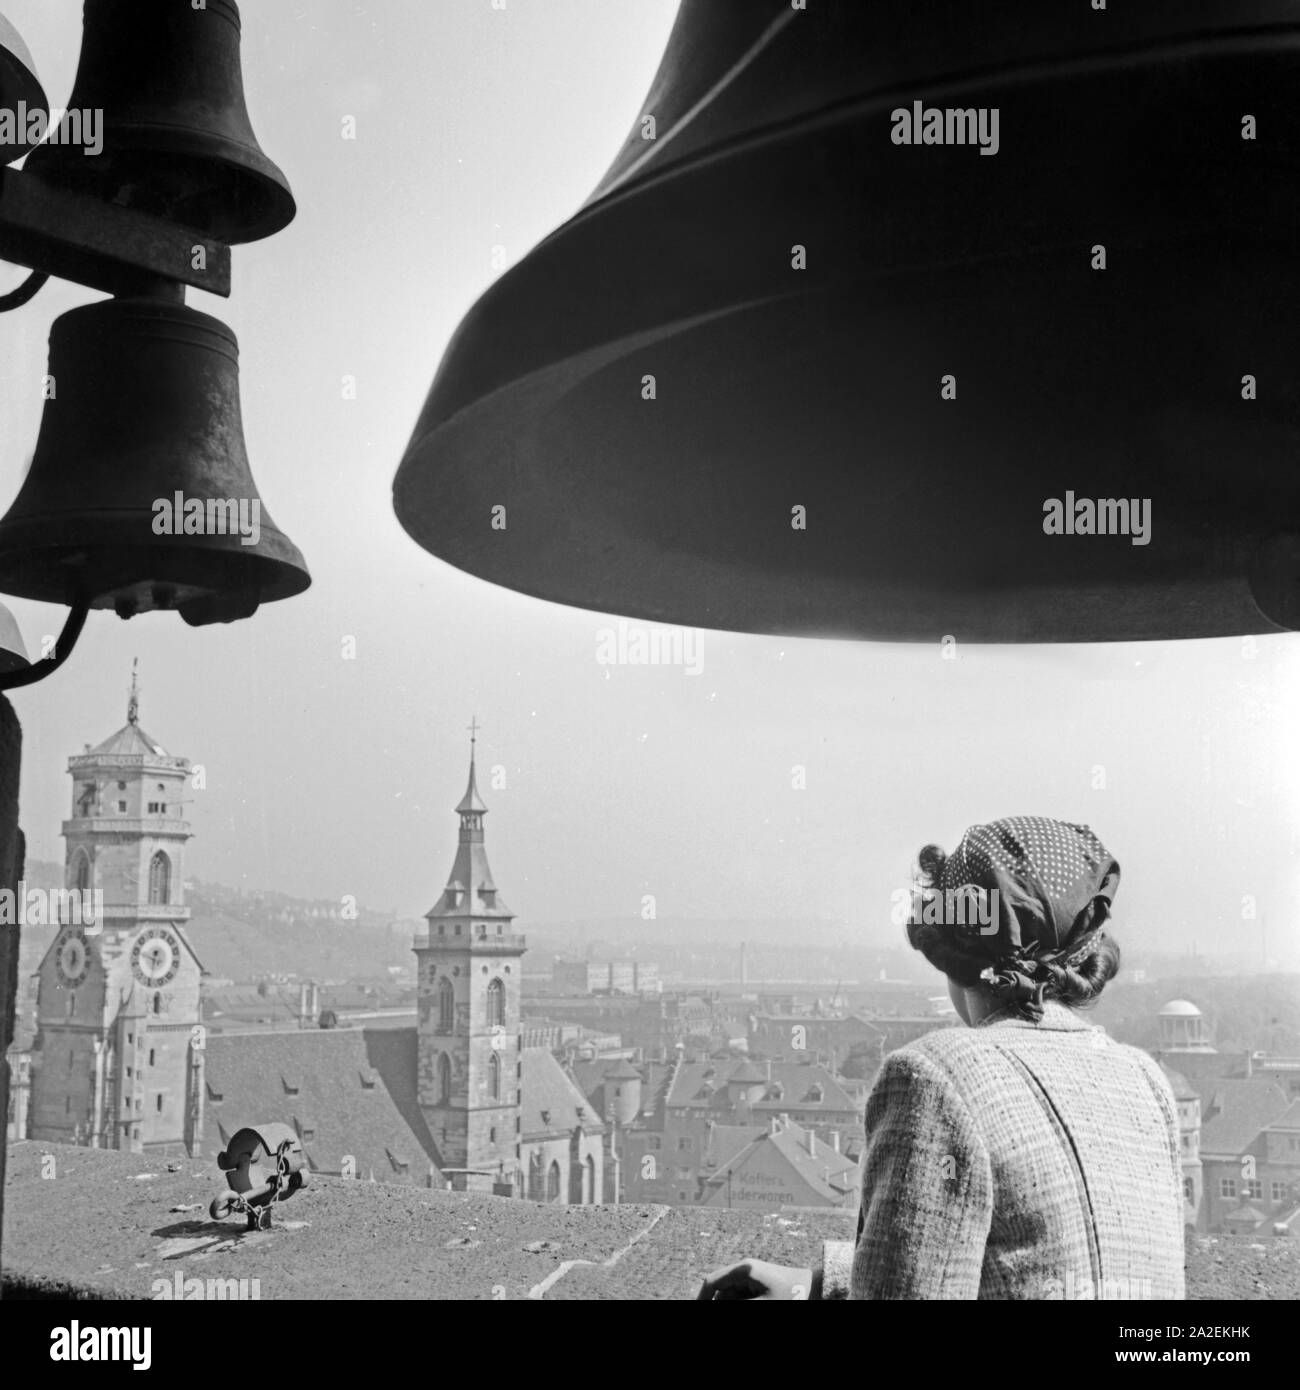 Eine Frau steht unter dem Geläut des Rathausturmes in Stuttgart und schaut hinüber zur Stiftskirche, Deutschland 1930er Jahre. Eine Frau unter den glockenschlag von Stuttgart City Hall anzeigen Stiftskirche, Deutschland 1930. Stockfoto